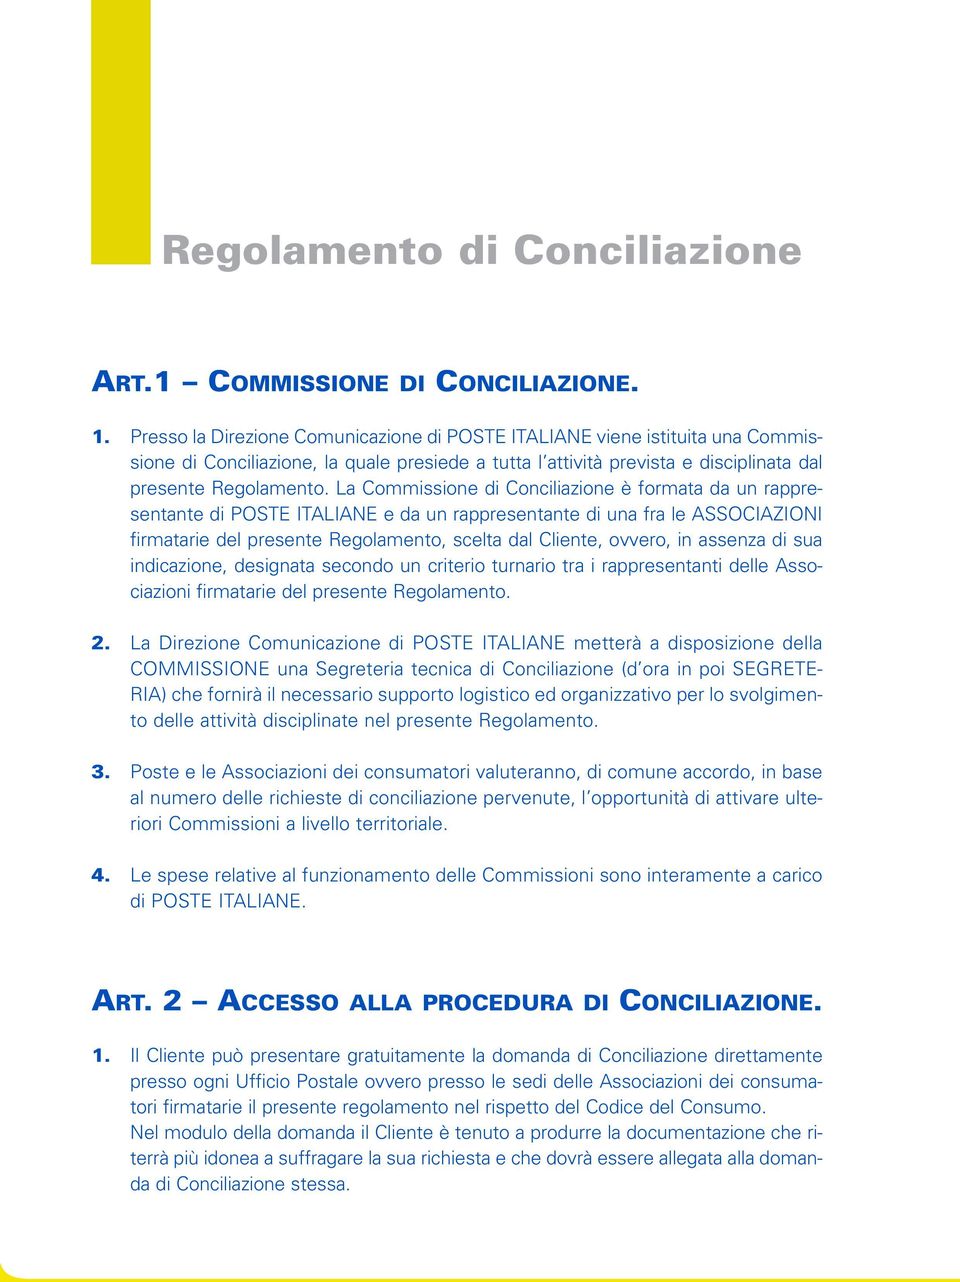 La Commissione di Conciliazione è formata da un rappresentante di POSTE ITALIANE e da un rappresentante di una fra le ASSOCIAZIONI firmatarie del presente Regolamento, scelta dal Cliente, ovvero, in